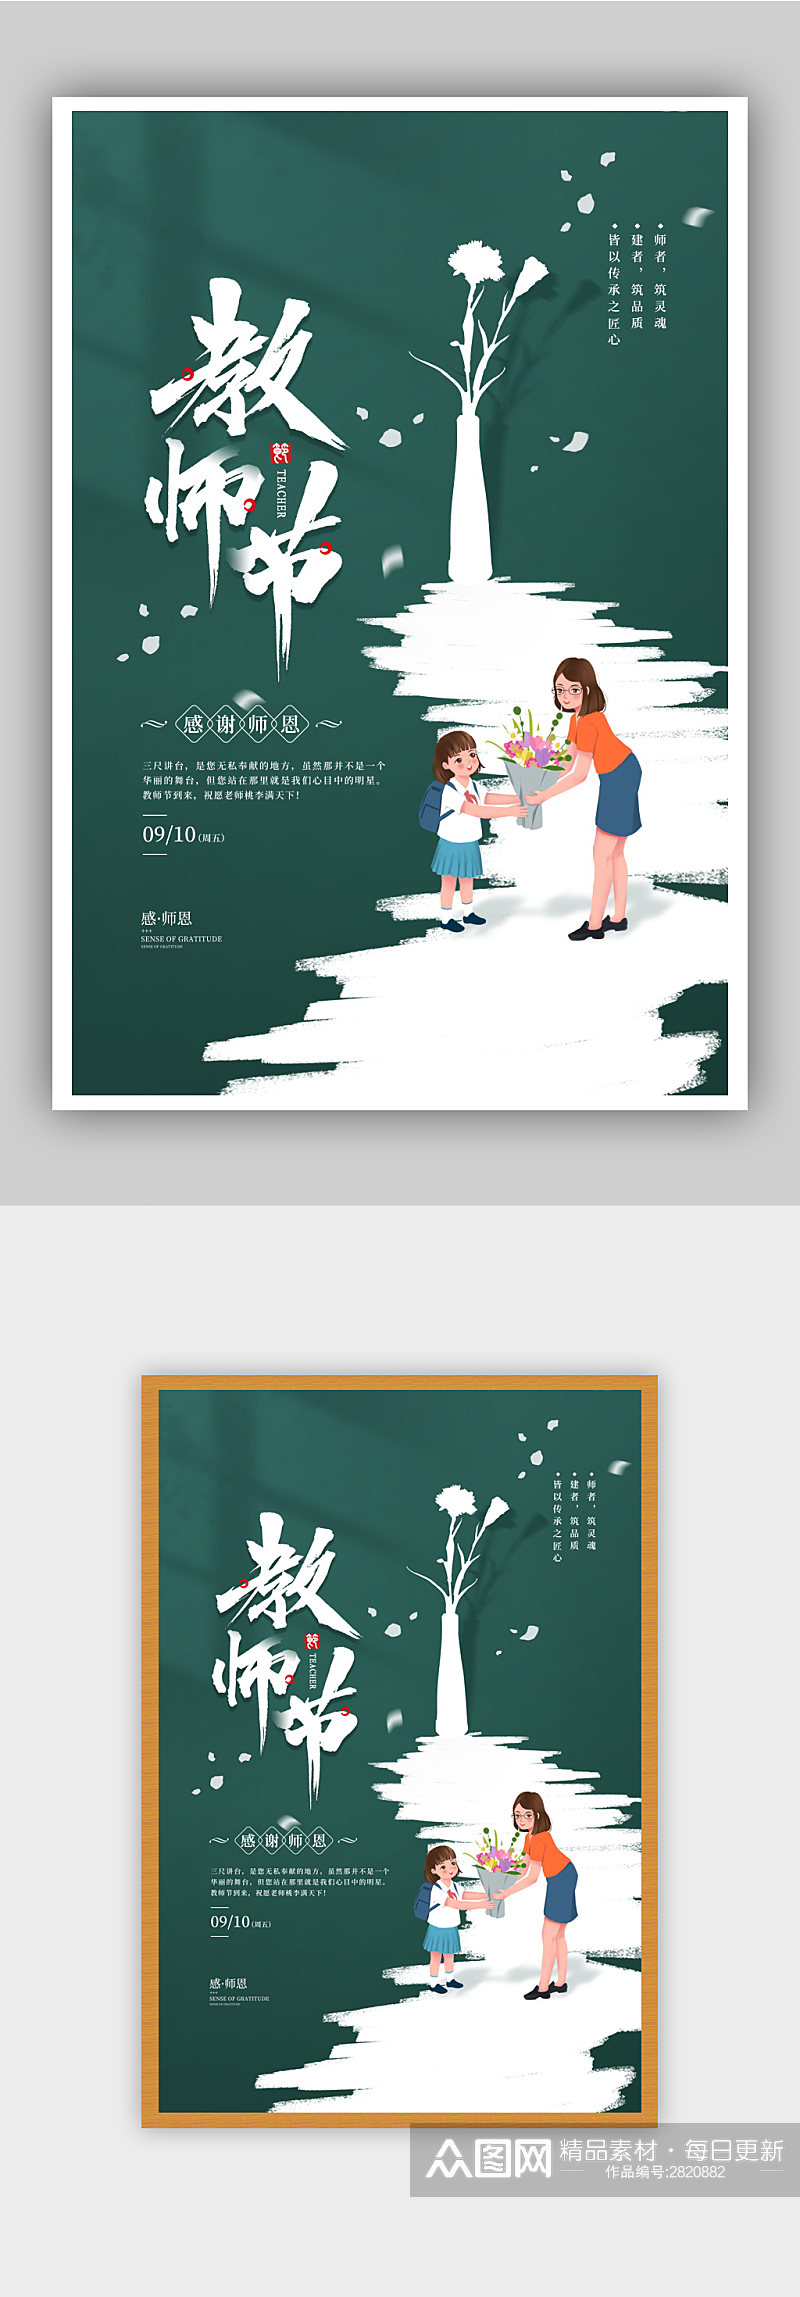 简约9月10日教师节宣传海报素材